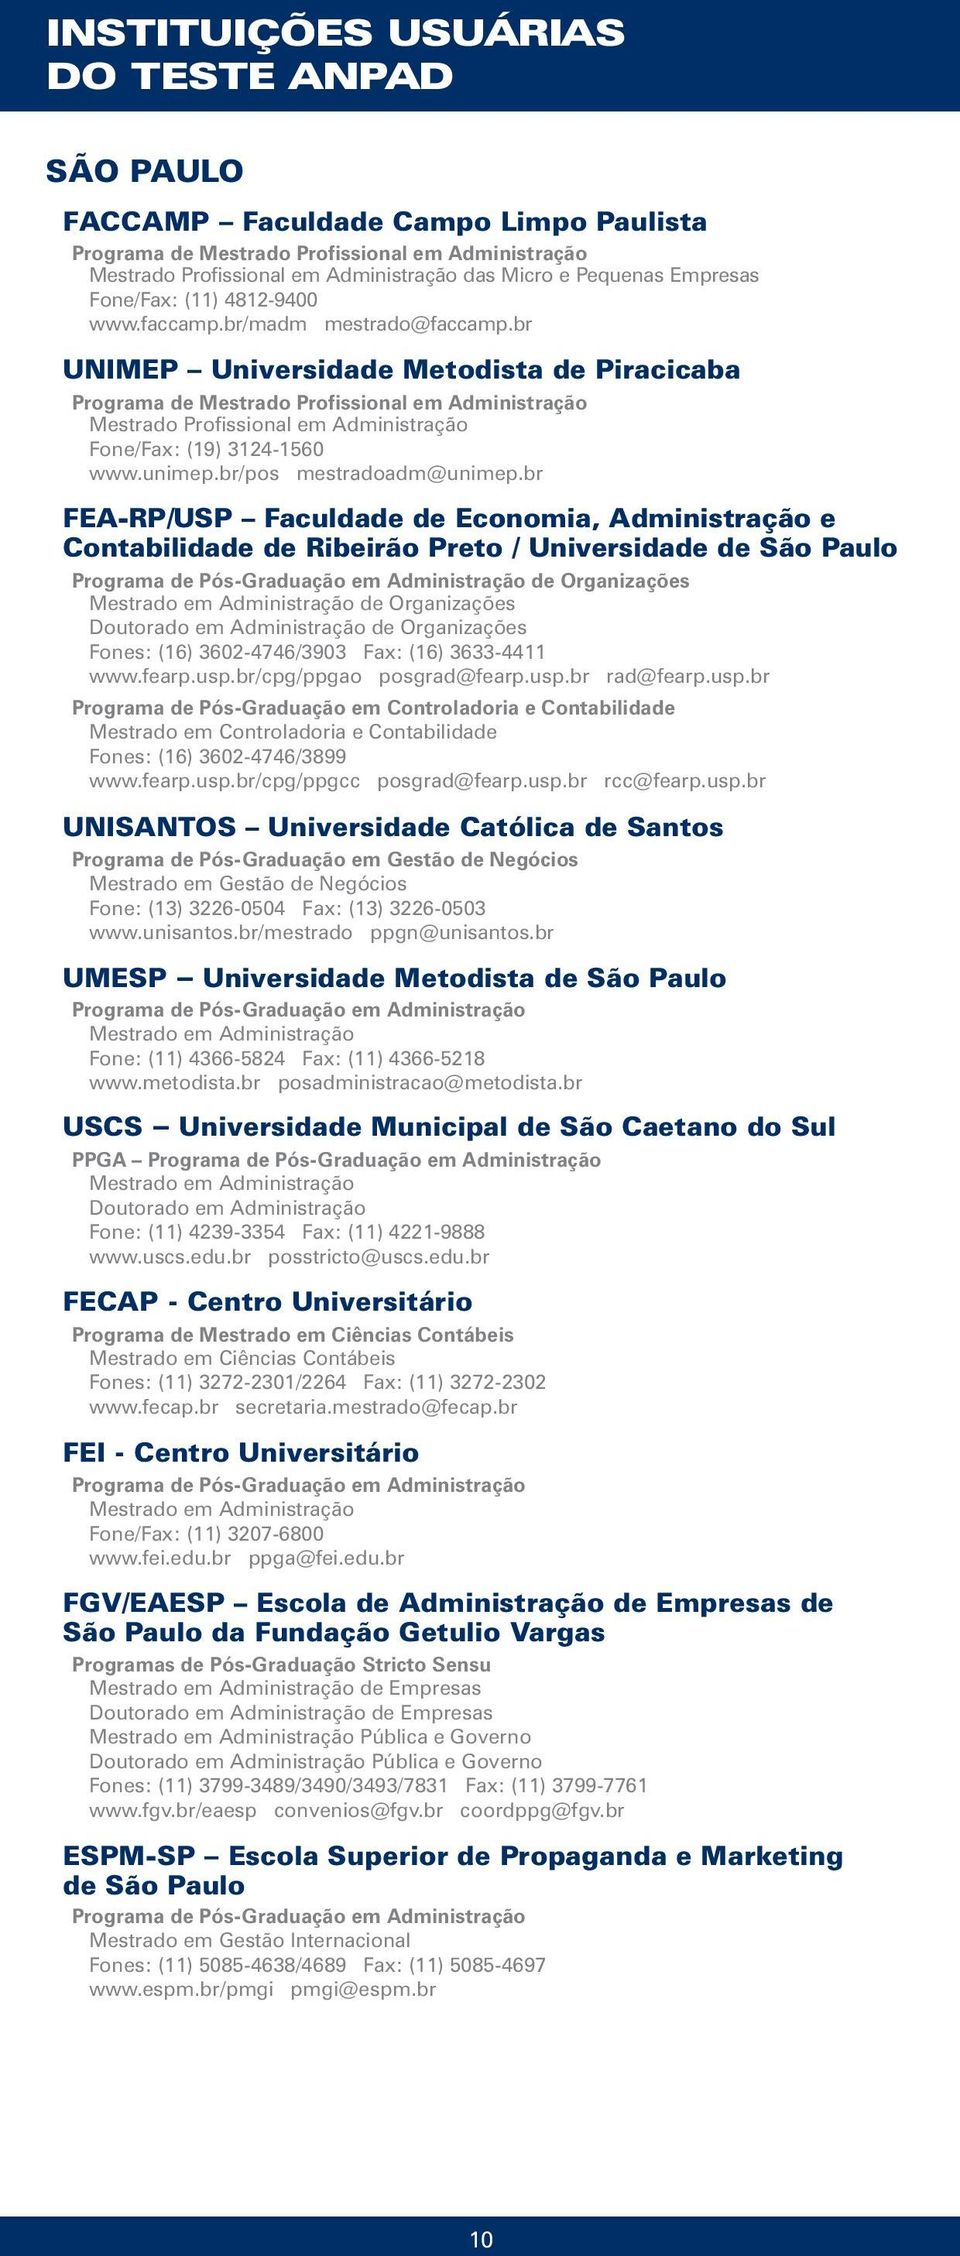 br FEA-RP/USP Faculdade de Economia, Administração e Contabilidade de Ribeirão Preto / Universidade de São Paulo de Organizações de Organizações de Organizações Fones: (16) 3602-4746/3903 Fax: (16)